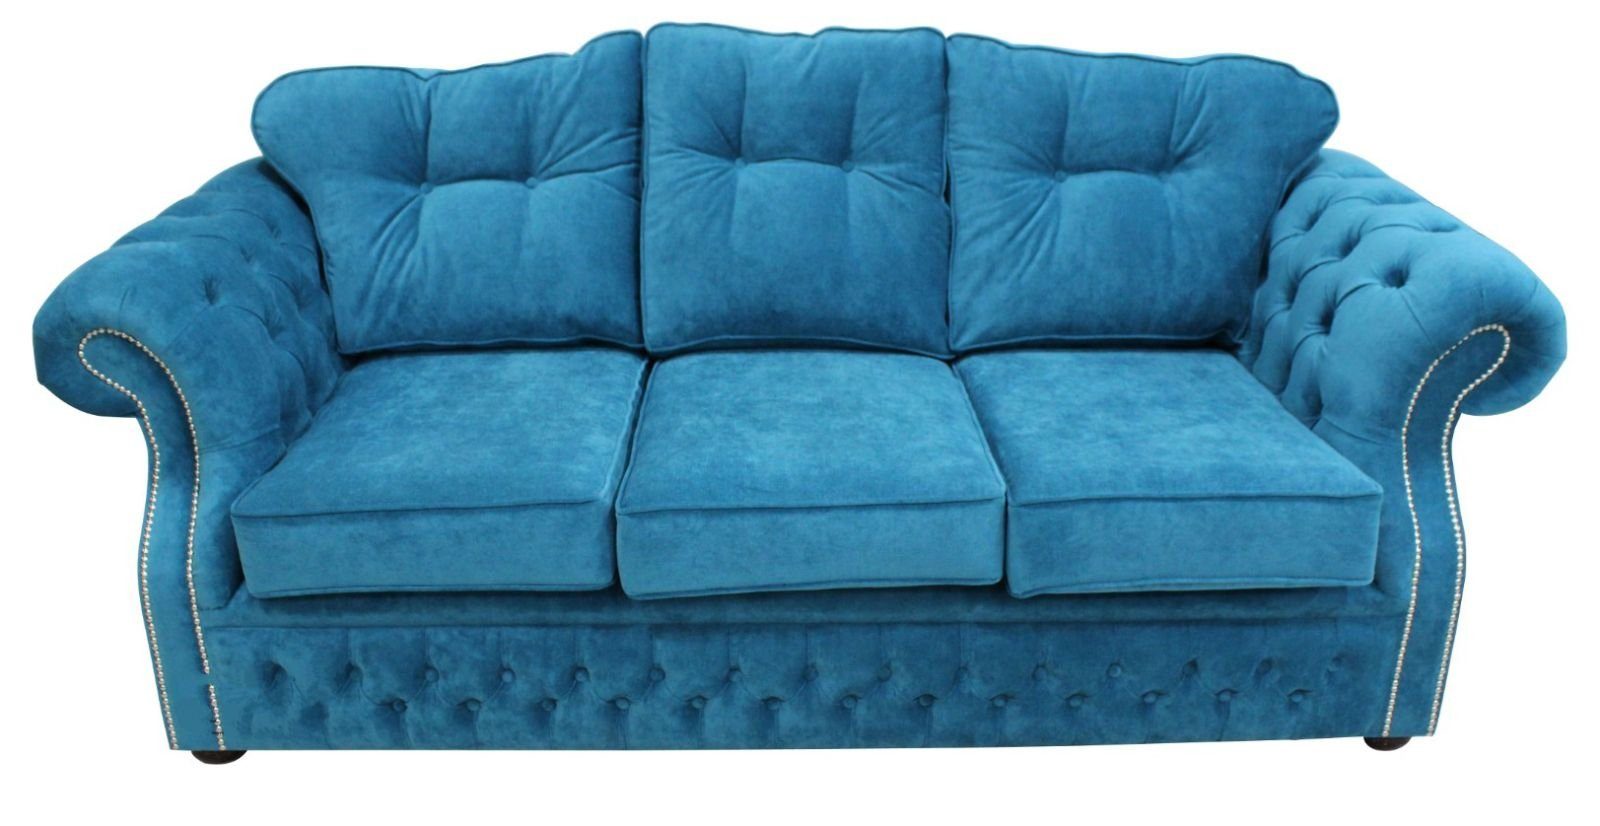 JVmoebel Sofa Blauer Chesterfield Europe Made Sofa in luxus Design, Wohnzimmermöbel Polster